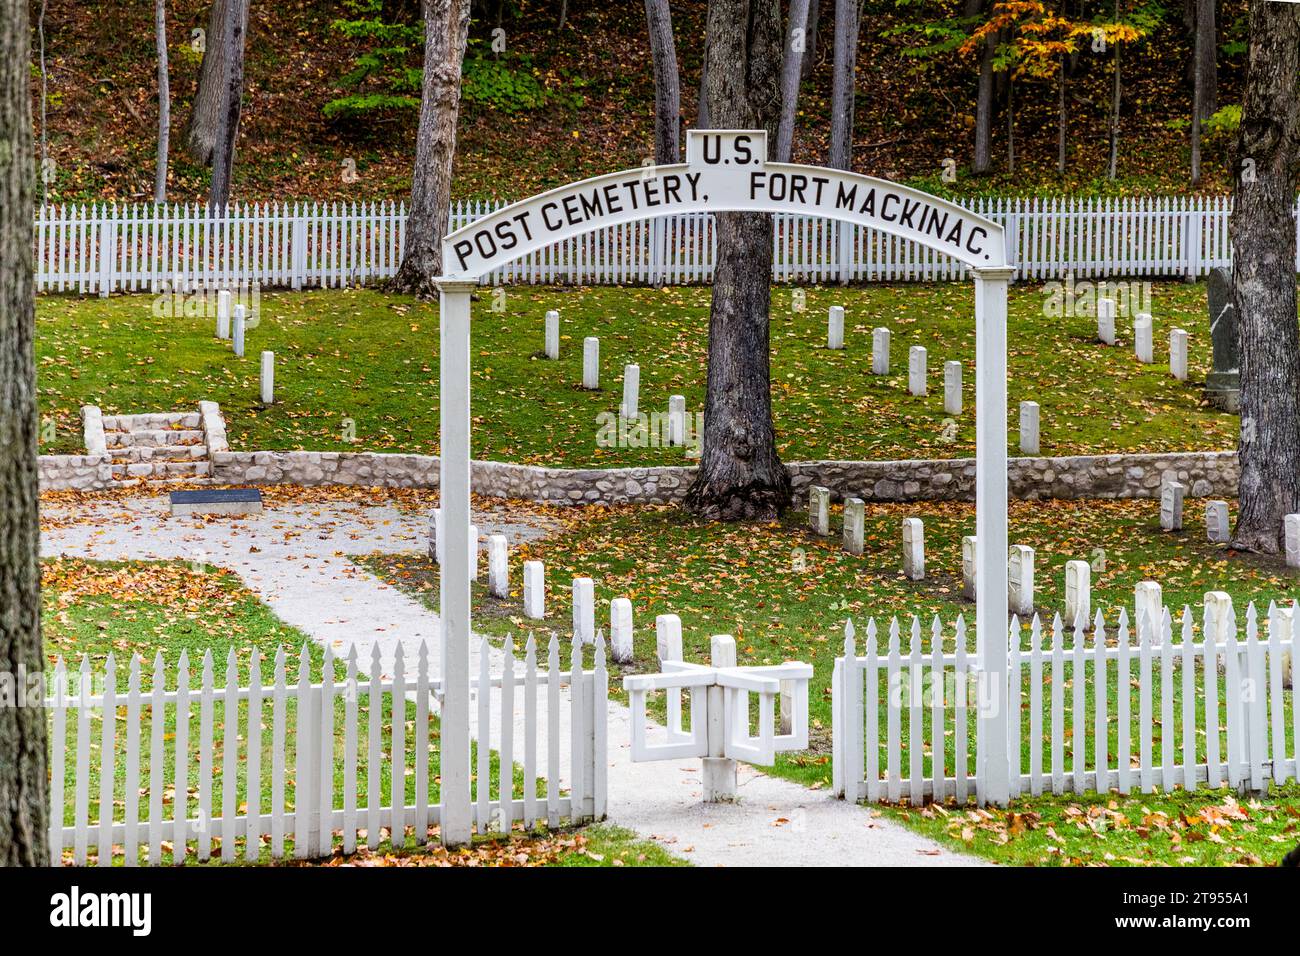 Fort Mackinac Post Cemetry. Hinter der alten Festung liegt der kleine Friedhof des ehemaligen Militärpostens, umgeben von einem weißen Streifenzaun. Militärische Grabsteine stehen in geraden Reihen. Die Briten gründeten 1780 Fort Mackinac. Friedhof der Garnison auf Mackinac Island. Fort Mackinac Island, Michigan, Usa Stockfoto